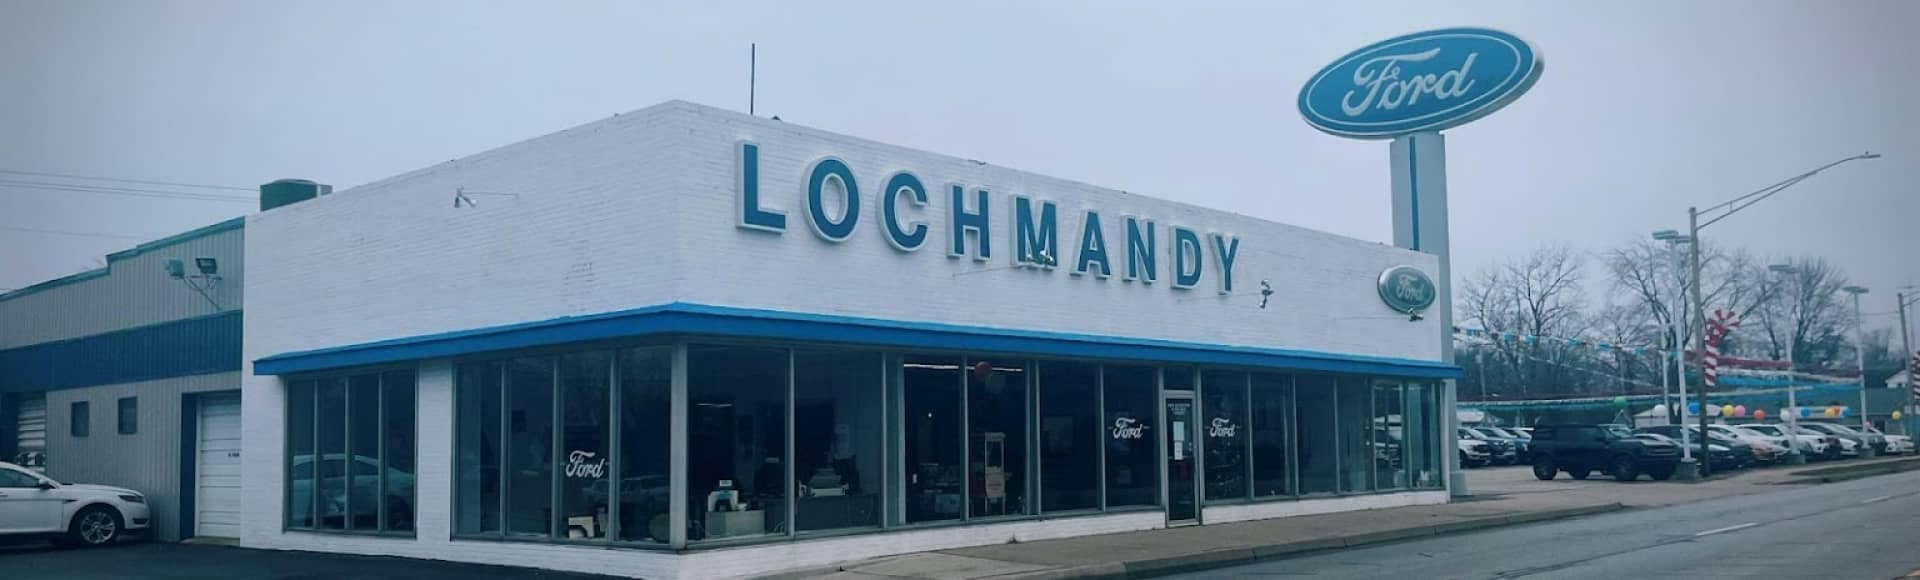 Lochmandy Ford